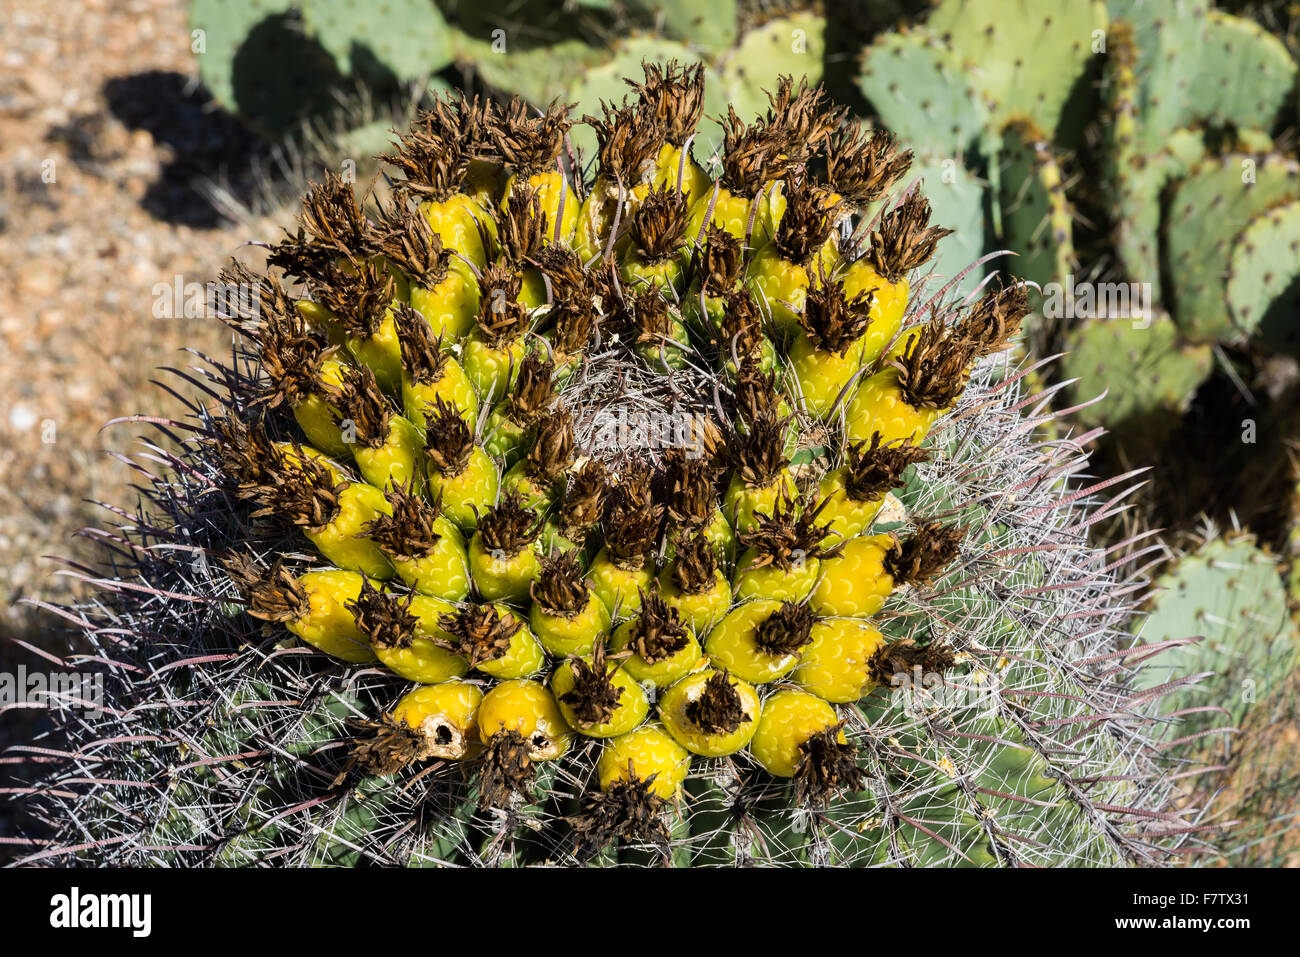 Les fruits d'or de canon (Ferocactus cylindraceus cactus). Saguaro National Park, Tucson, Arizona, USA. Banque D'Images